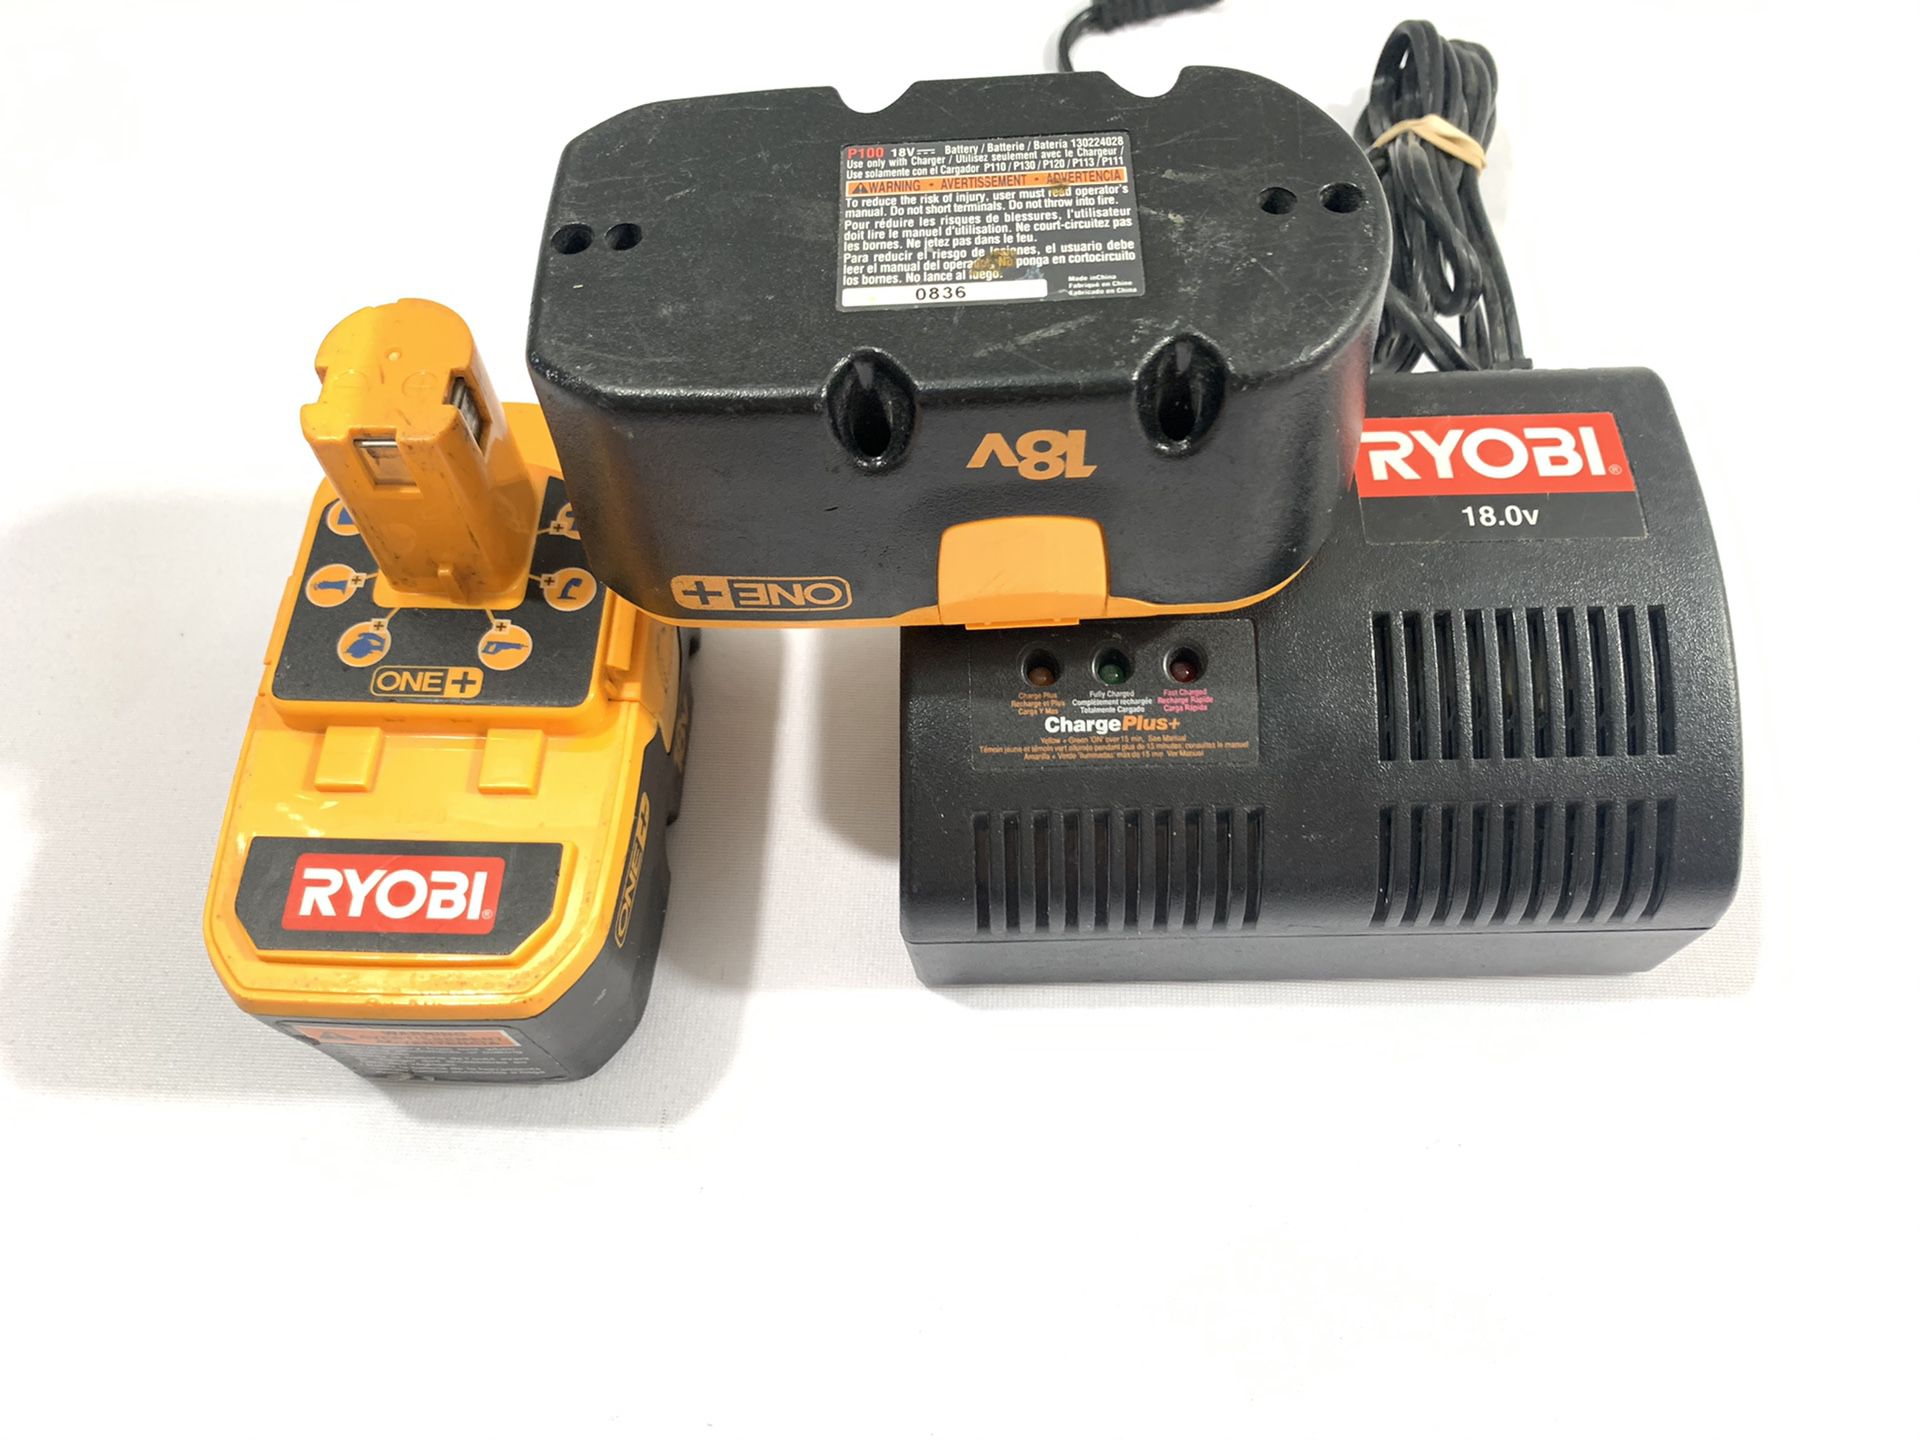 Ryobi 18.0 Volt 1423701 Charger & 2 ONE + 18v P100 Battery Packs Tested